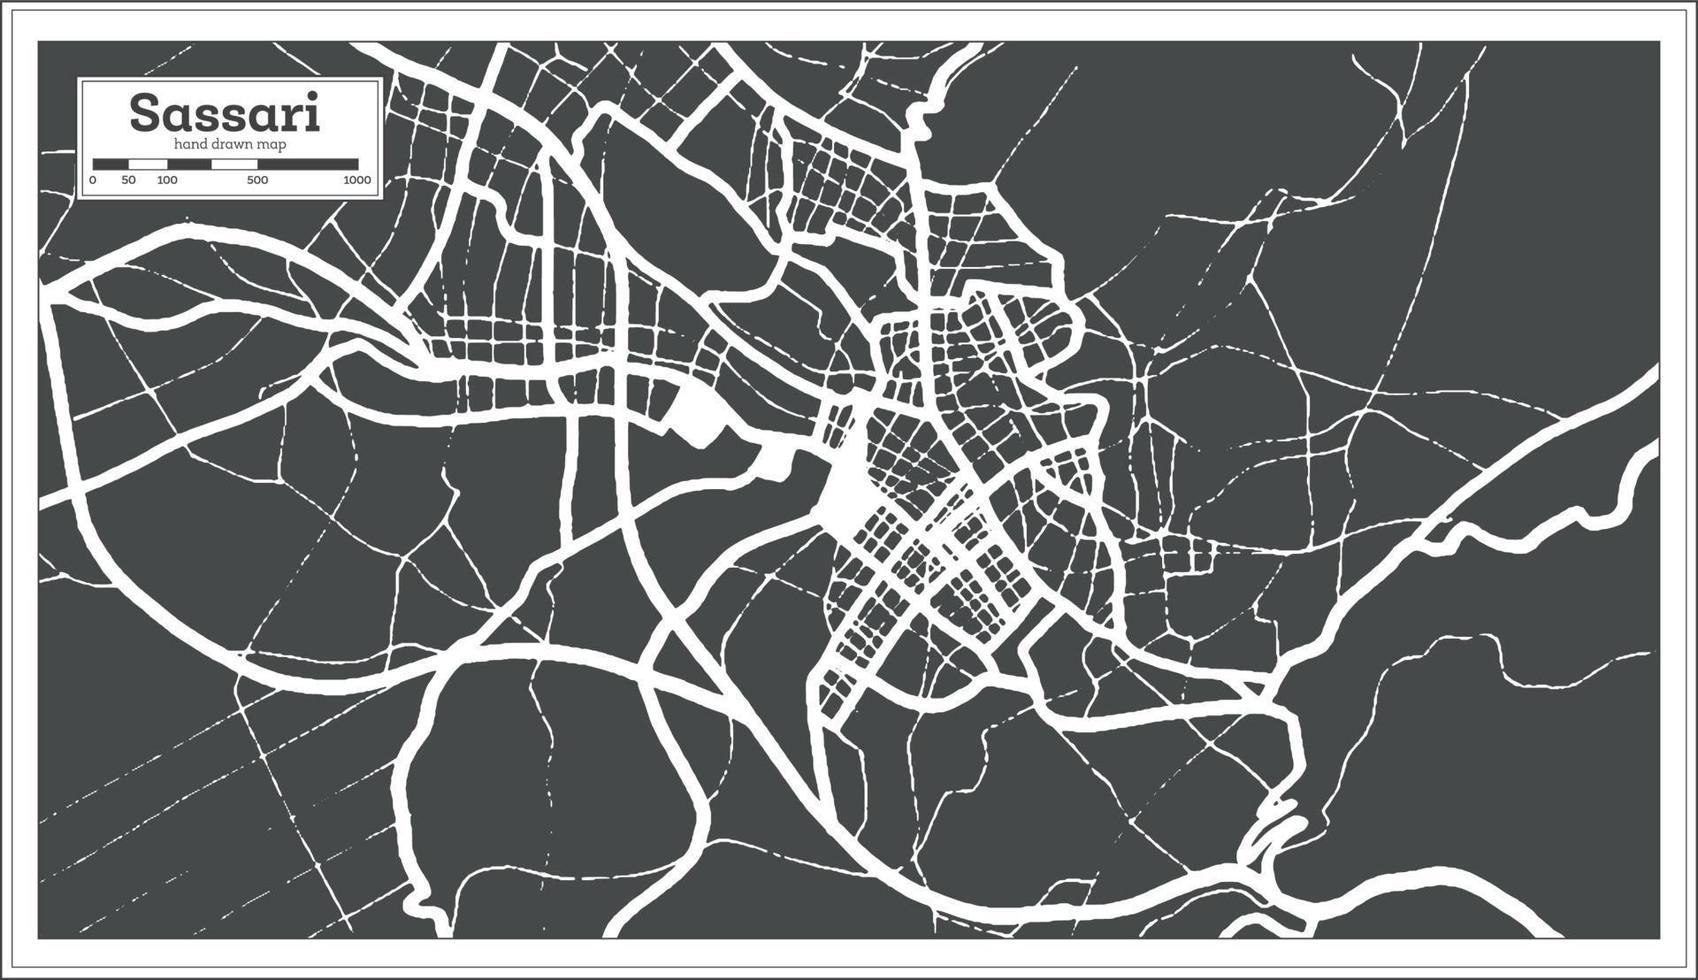 sassari italie carte de la ville en noir et blanc dans un style rétro. carte muette. vecteur